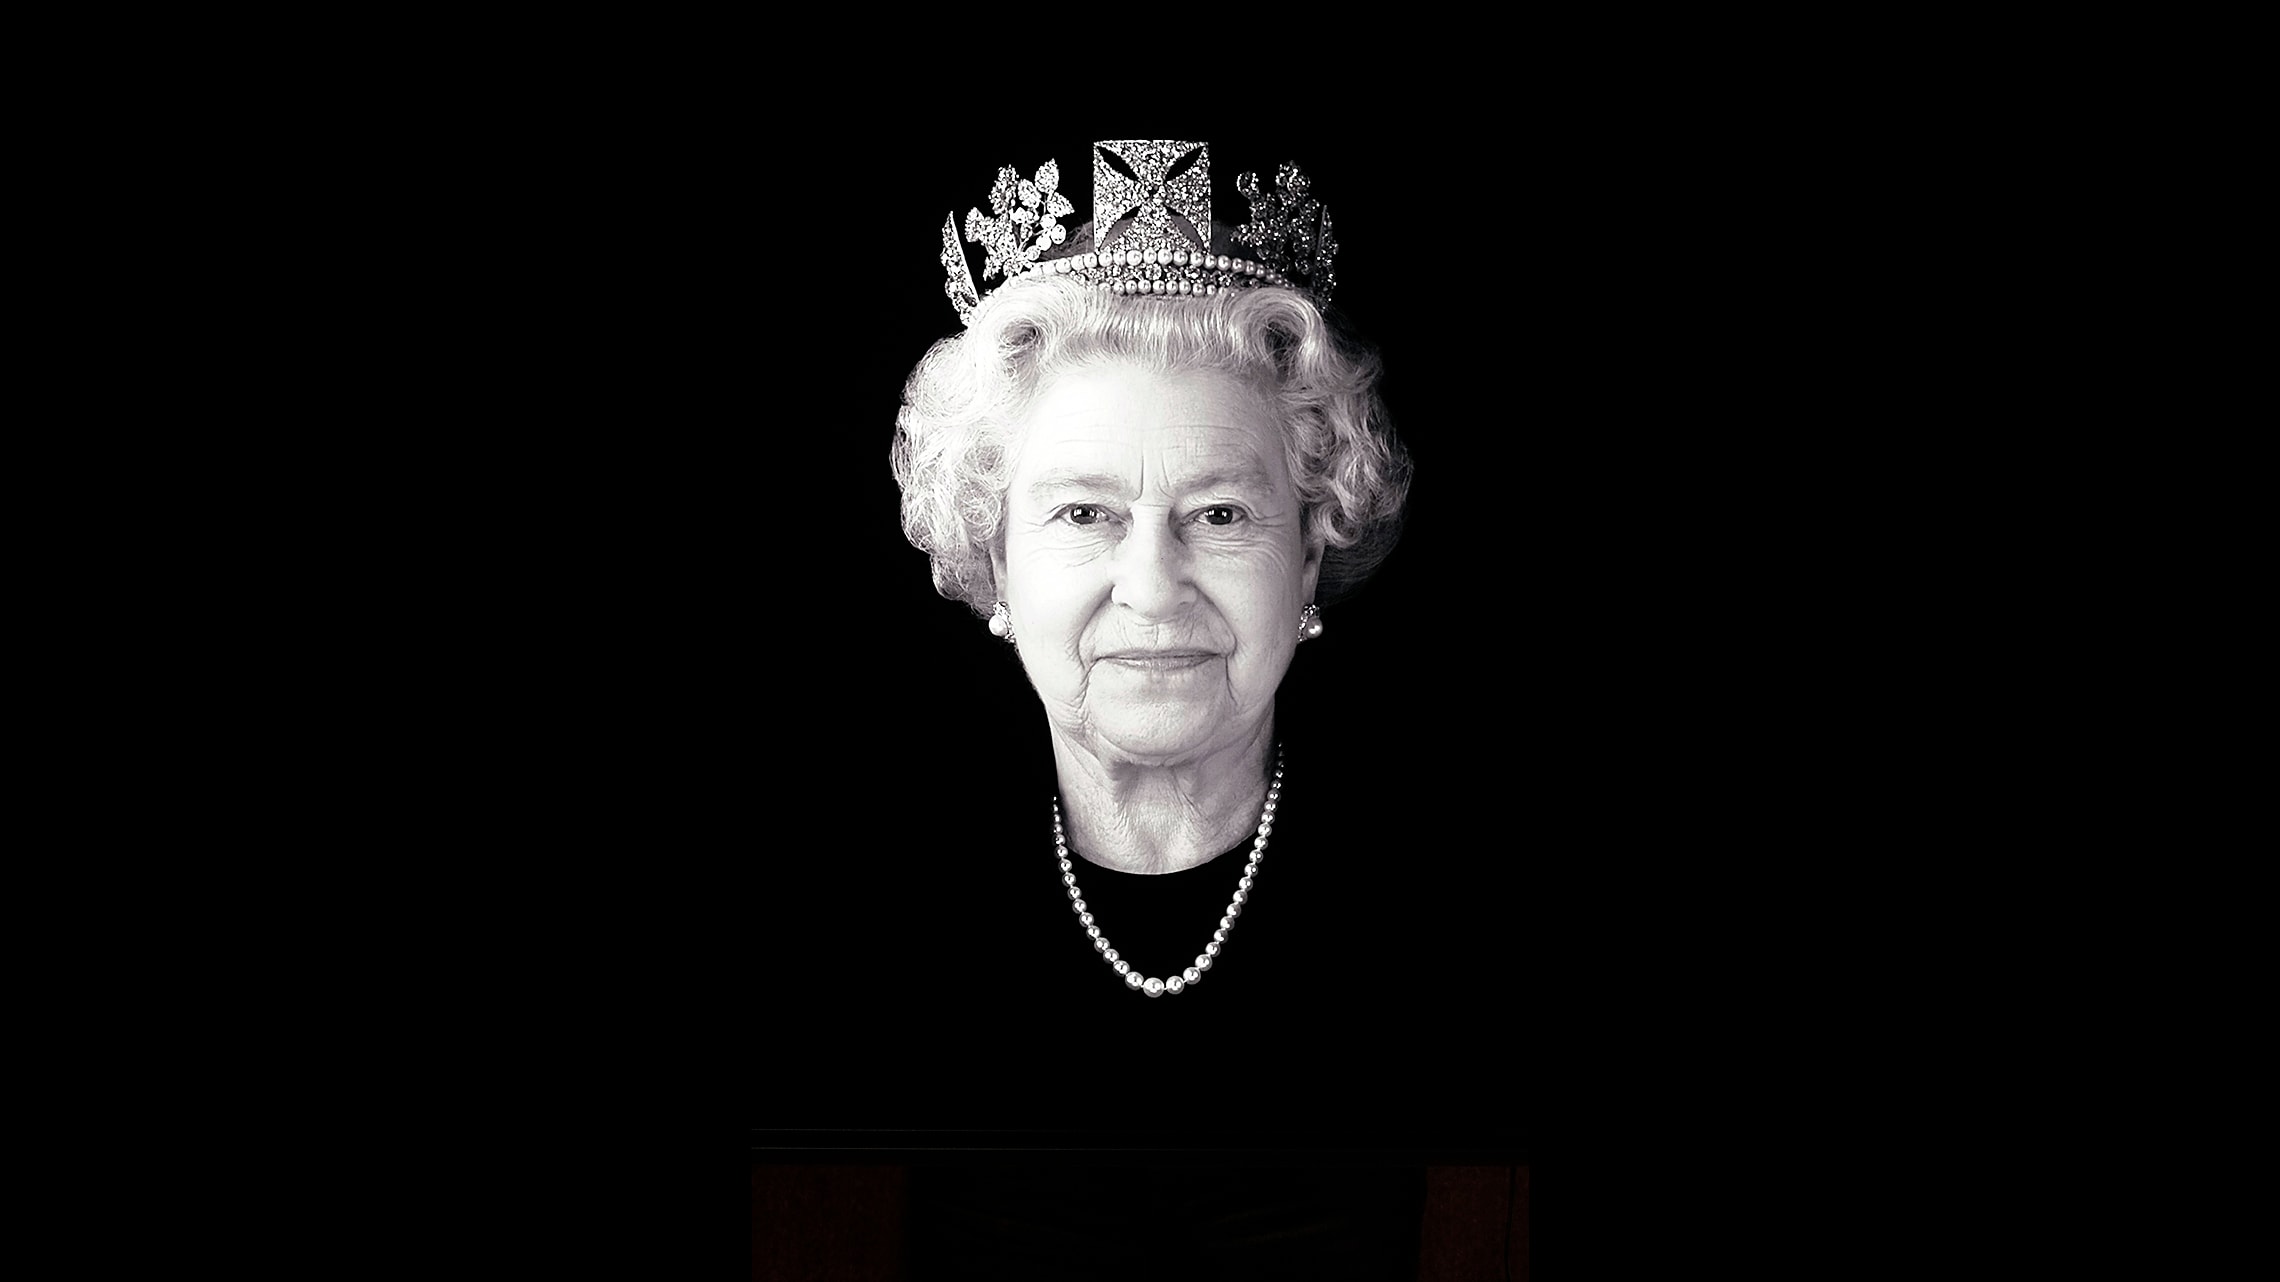 דיוקן של המלכה אליזבת השנייה מ-2004 (צילום: Rob Munday via AP)